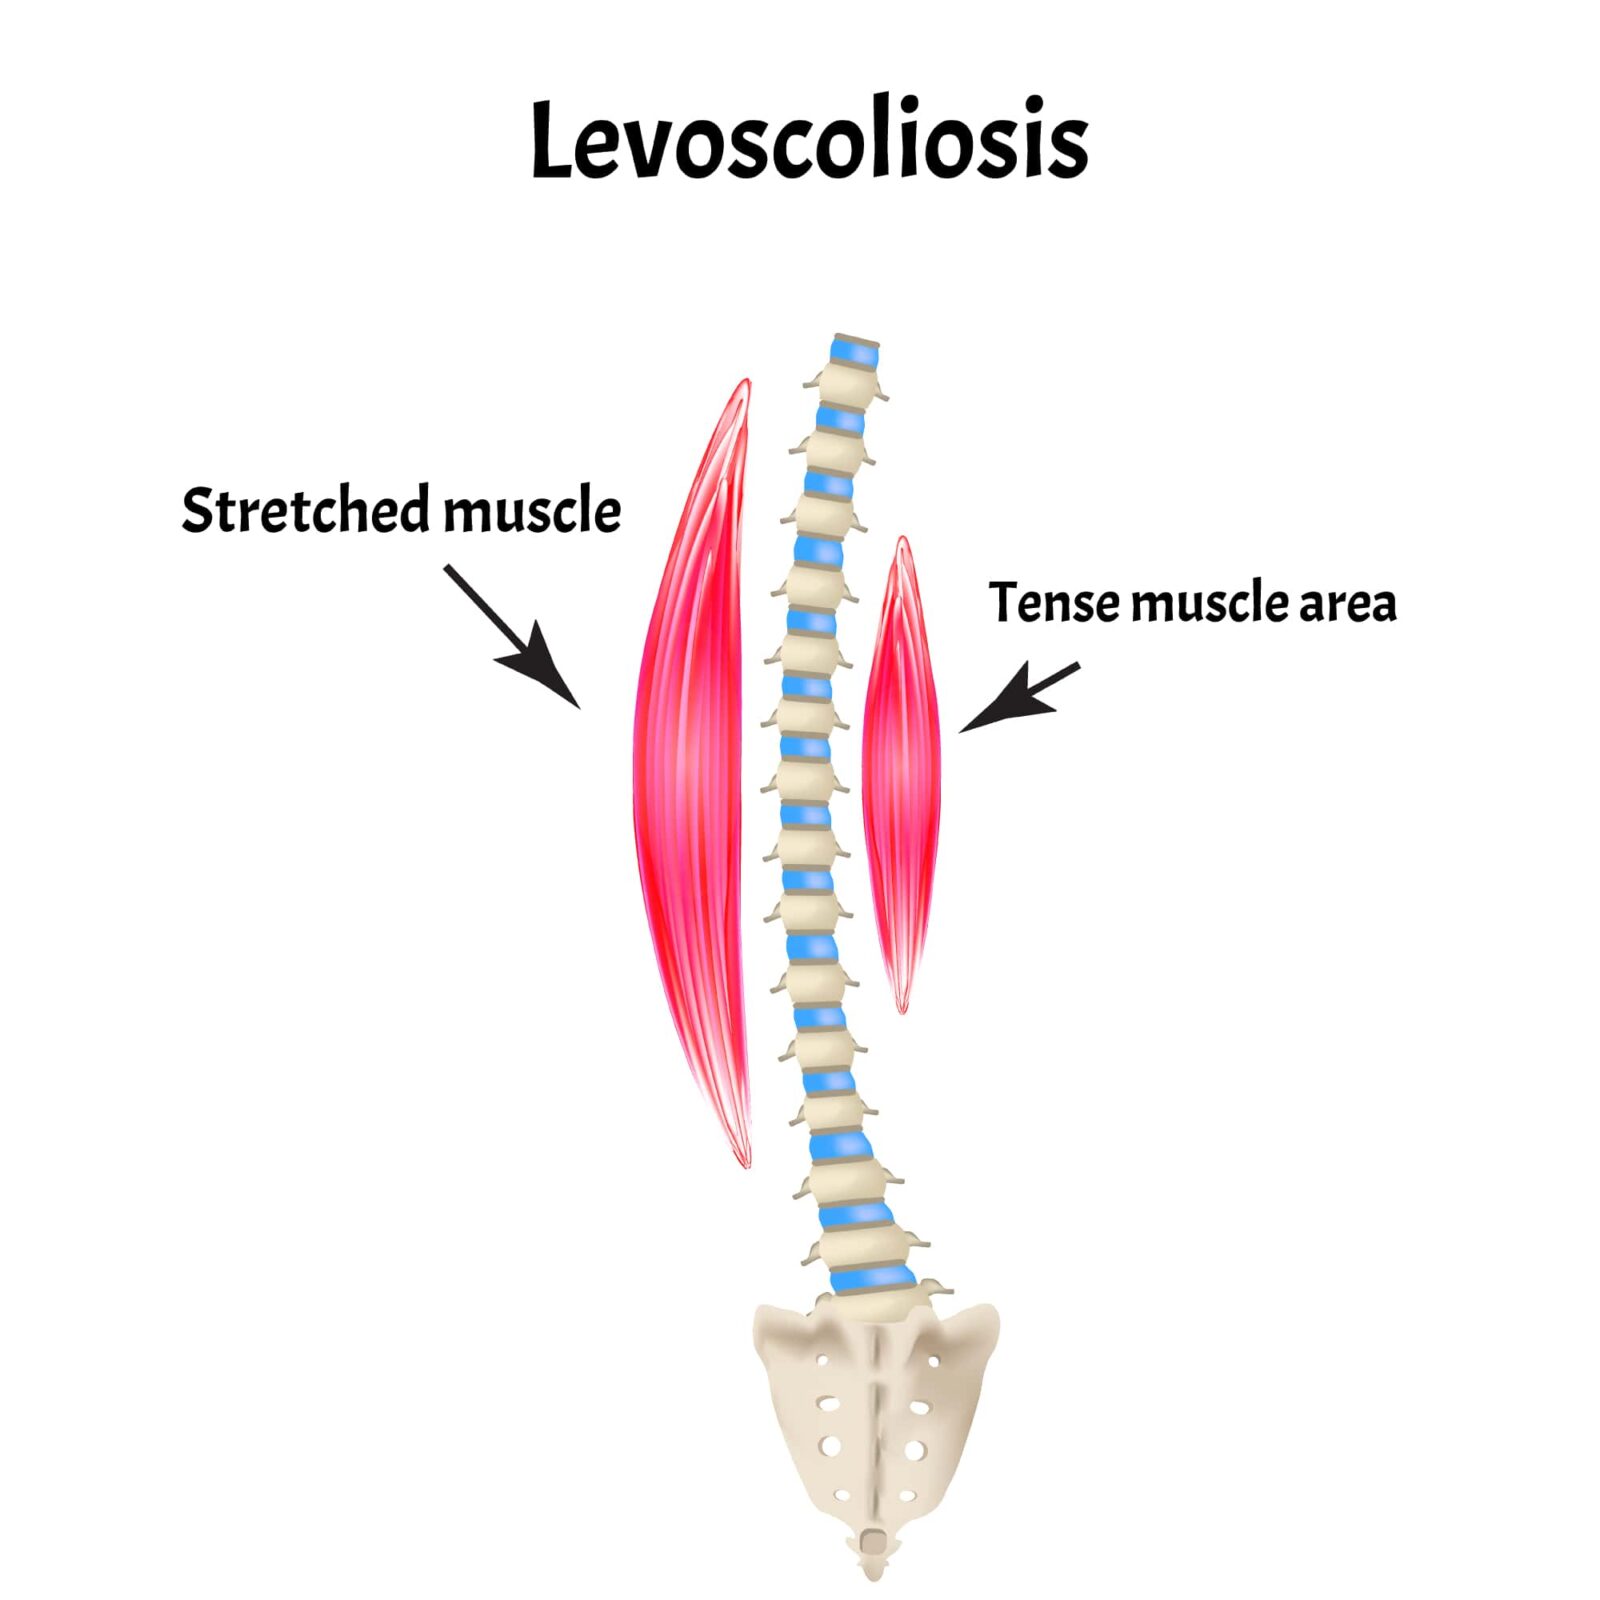 Levoscoliosis